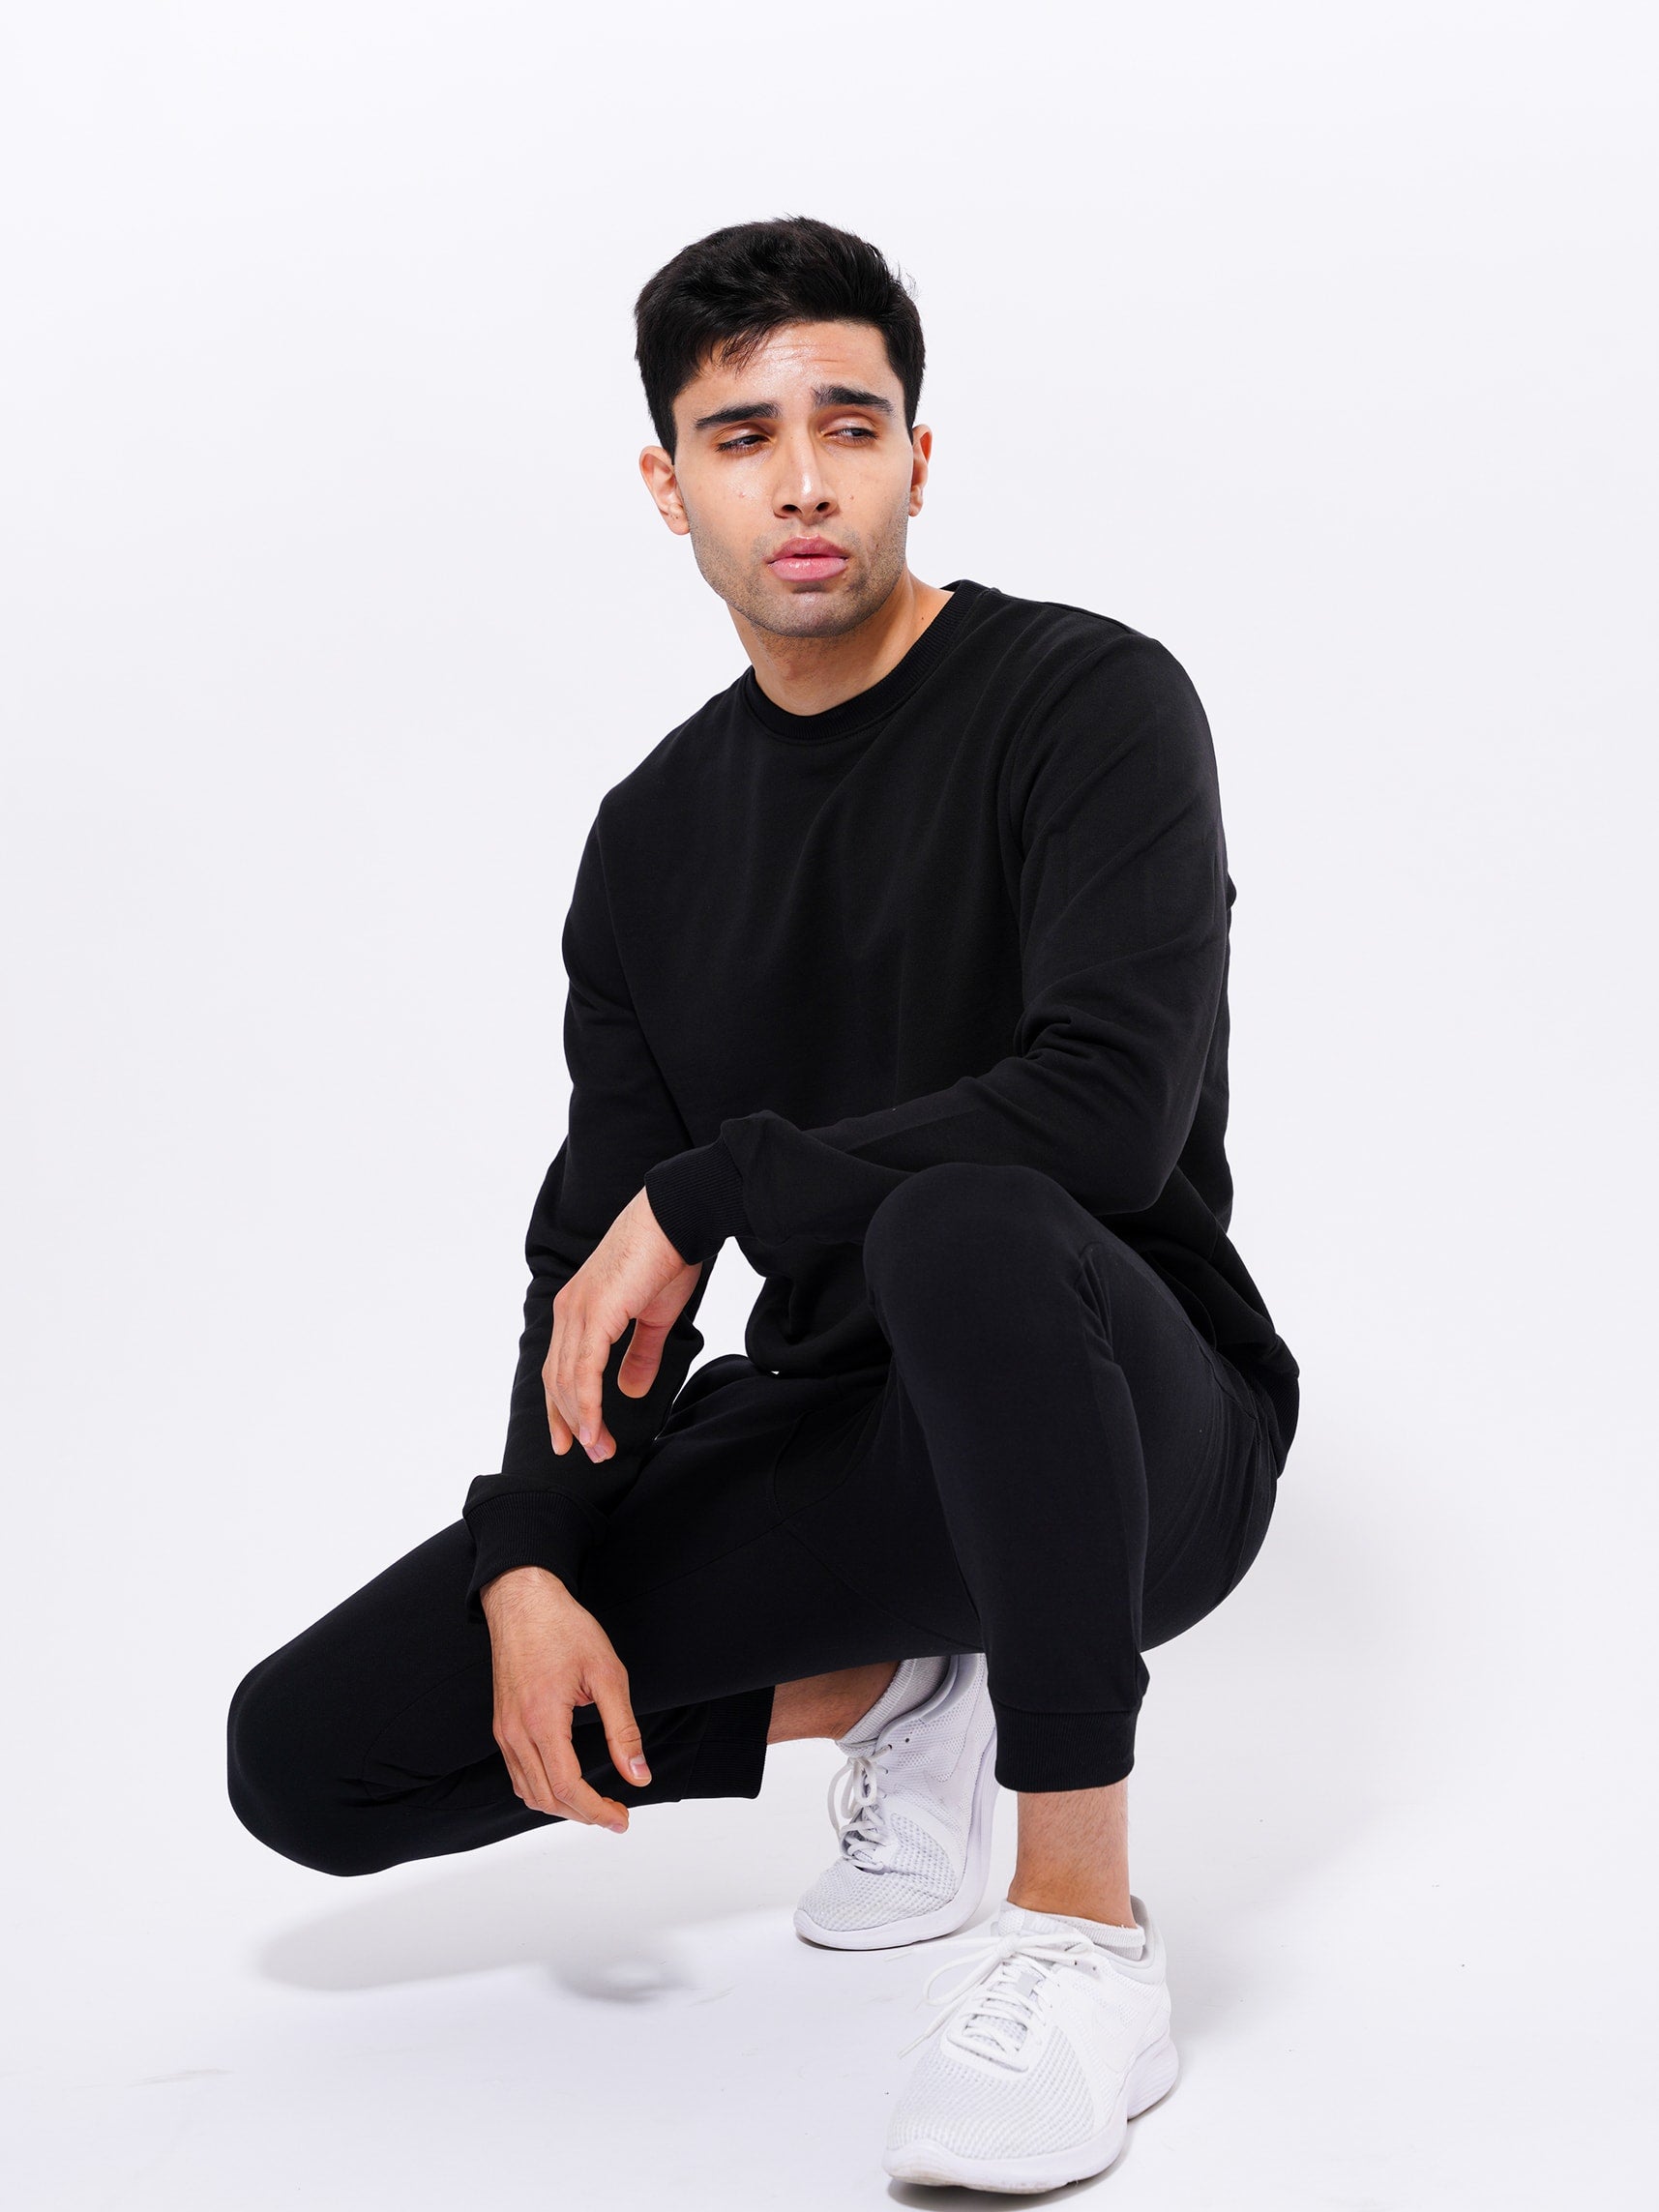 Men's Cotton Sweatshirts in Black Color - inteblu